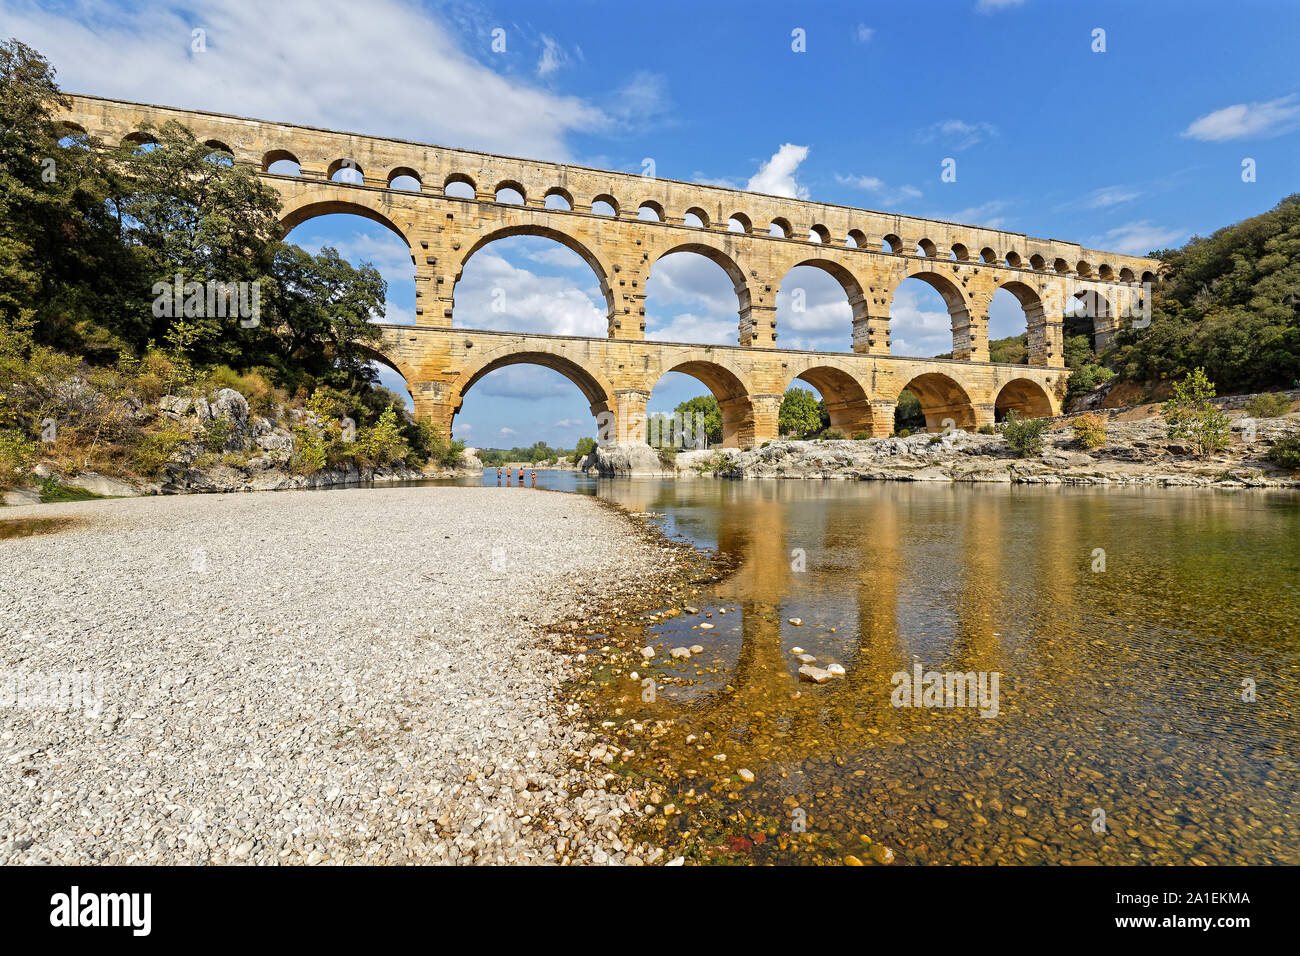 Villeneuve-lès-Avignon, France, 20 septembre 2019 : Le Pont du Gard, le plus haut pont-aqueduc romain, et l'un des plus préservés, a été construit au 1er siècle Banque D'Images